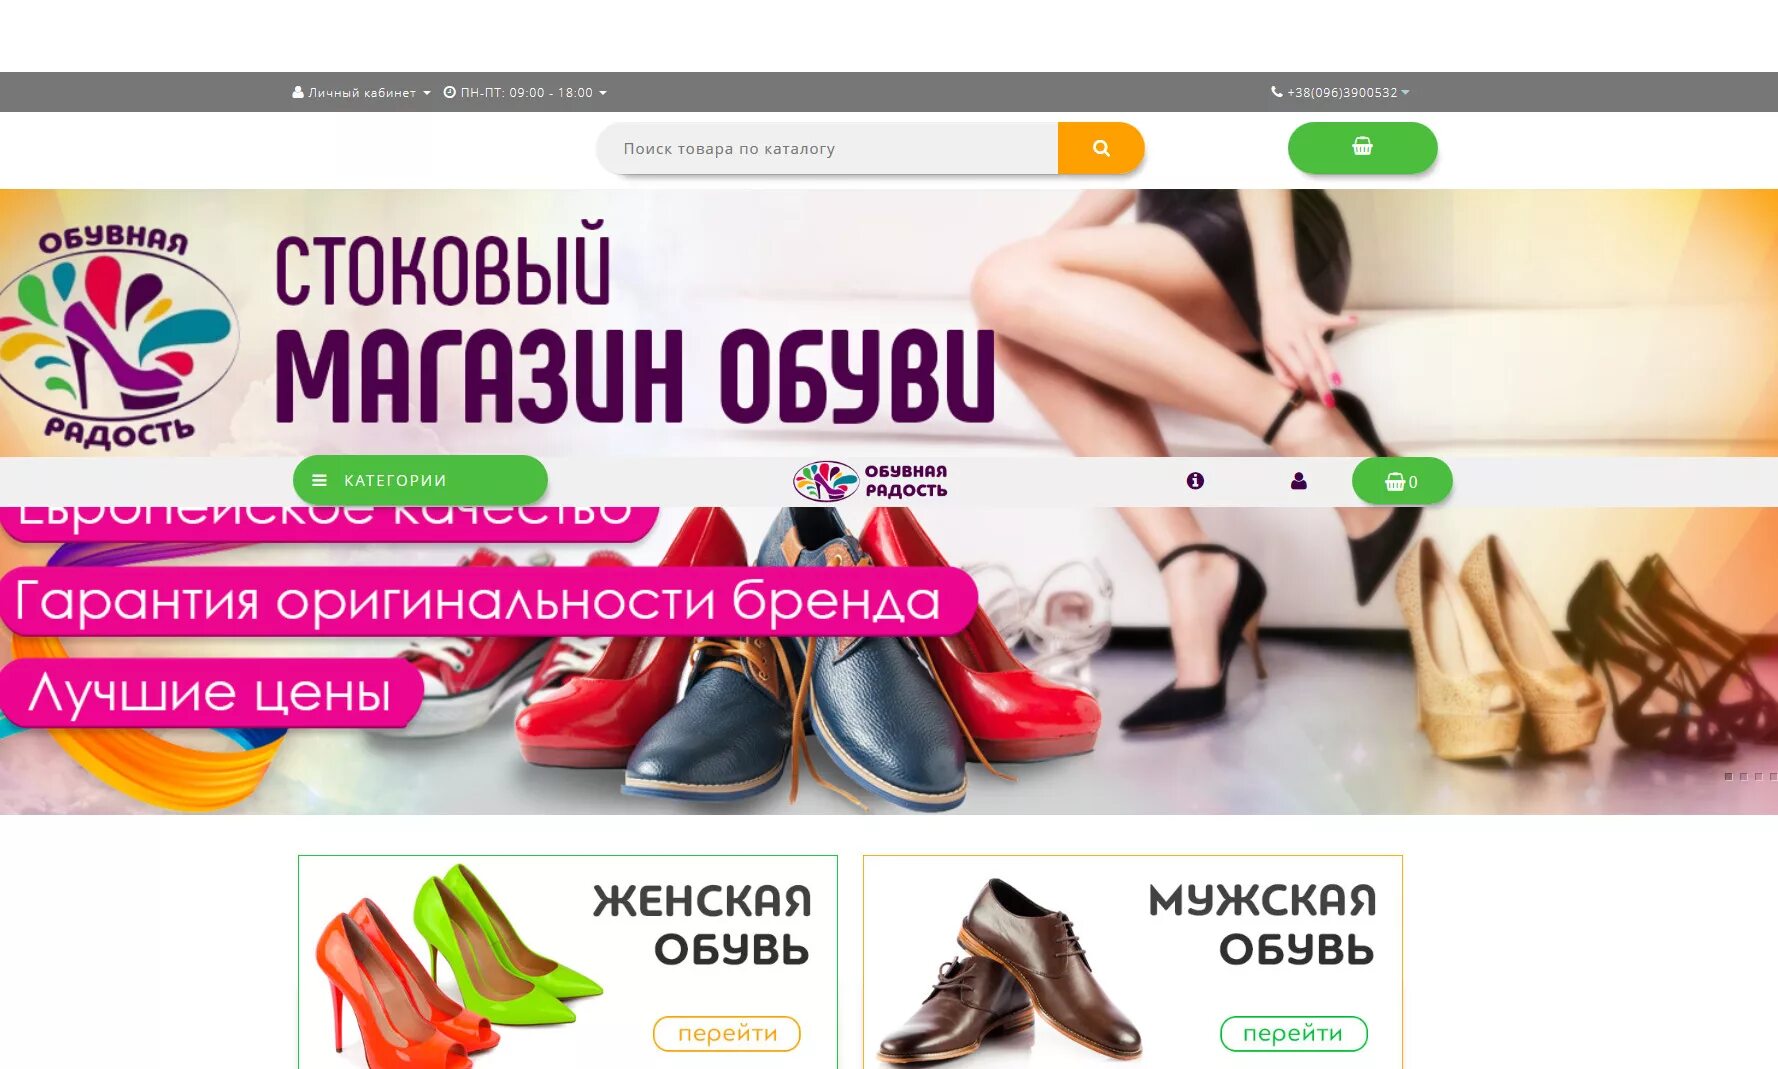 Много обуви каталог интернет магазин. Интернет магазин обуви Краснодар. Оптовые интернет магазины одежда и обувь. Каталог обуви.